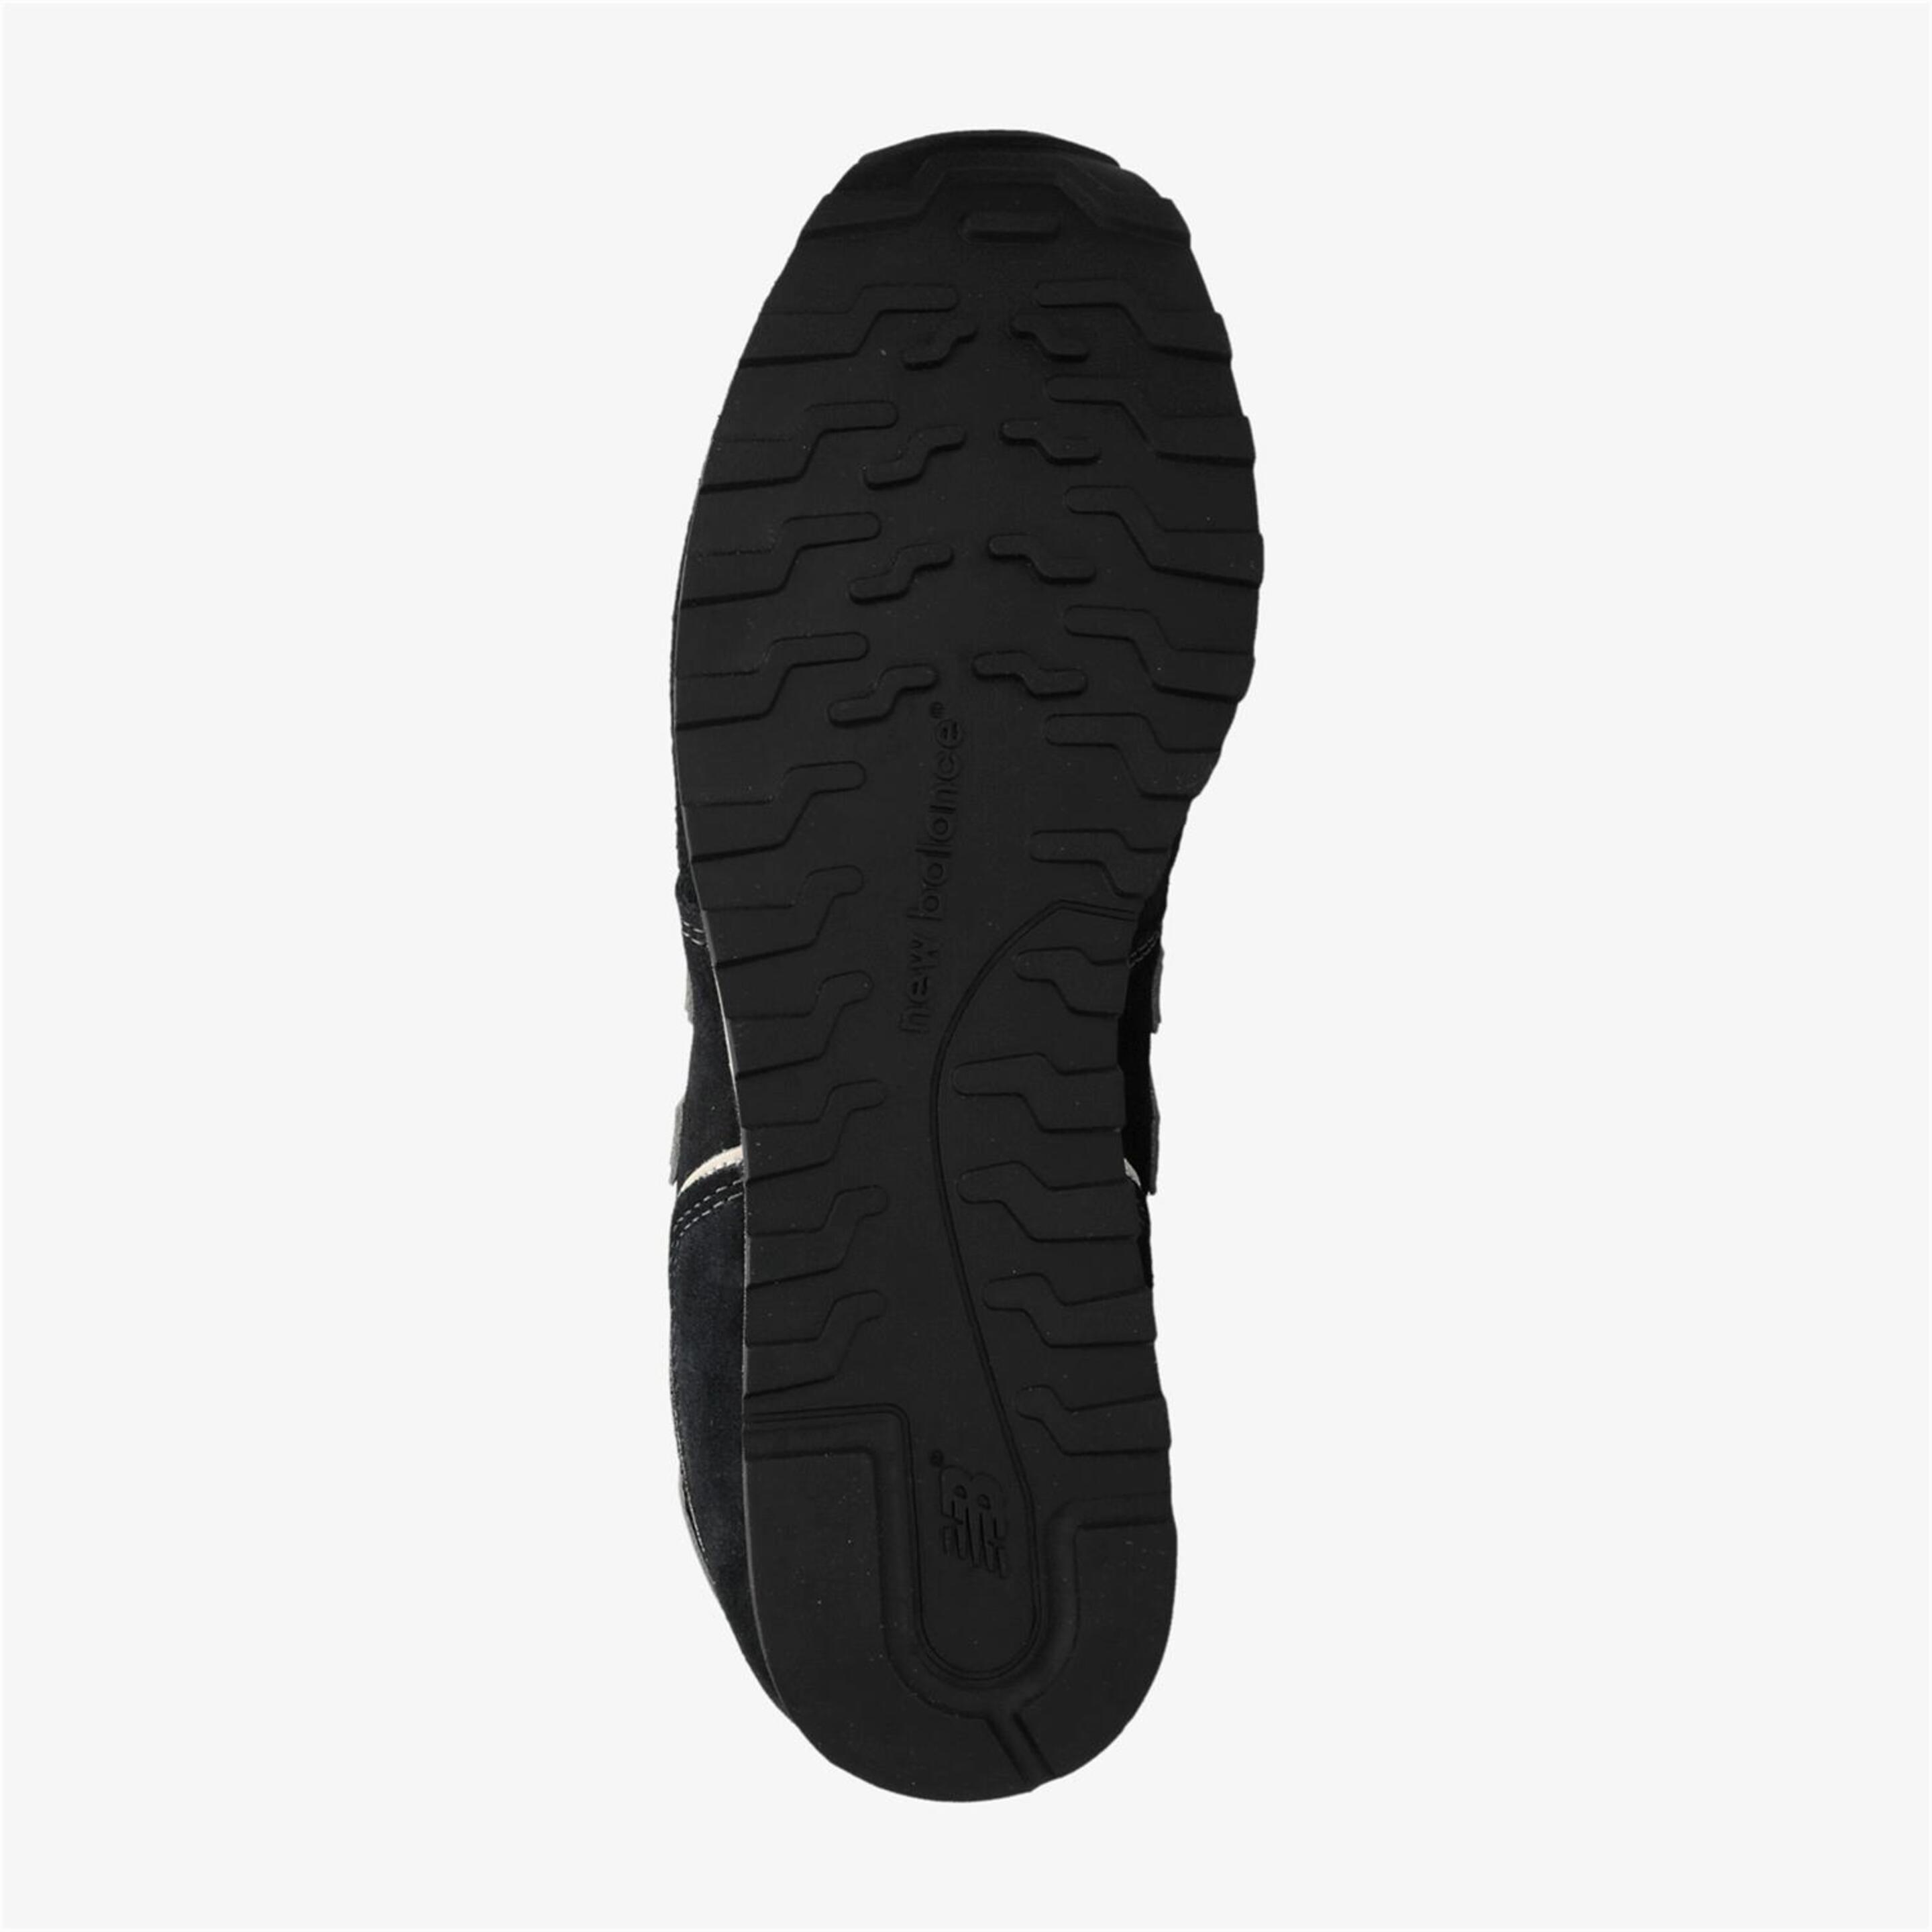 New Balance 373 - Negro - Zapatillas Hombre  | Sprinter